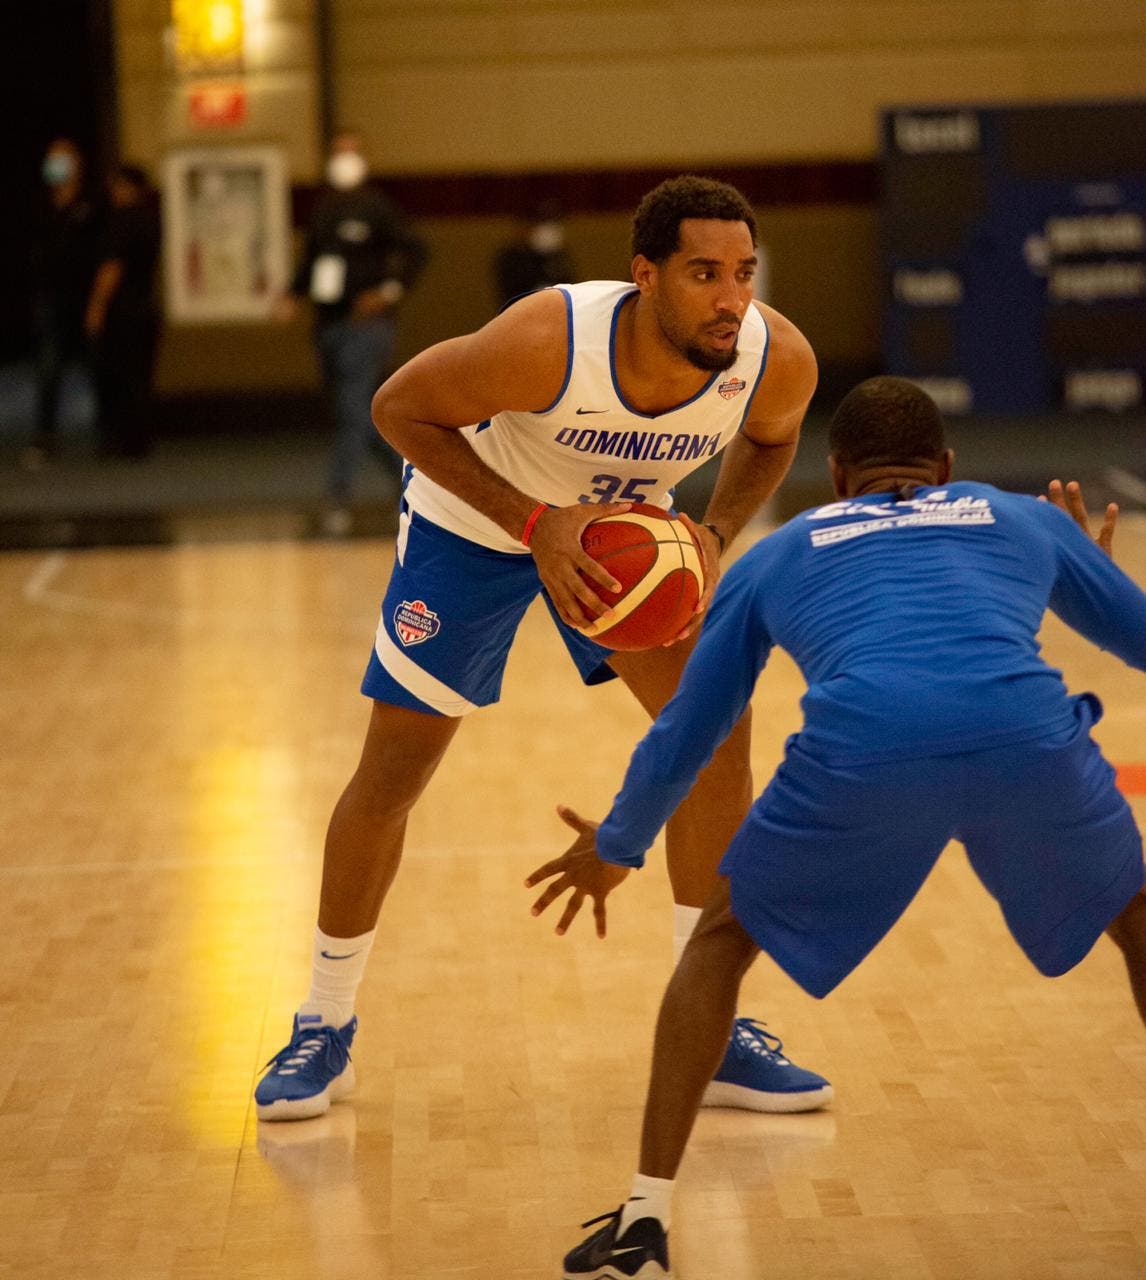 República Dominicana define 12 jugadores selección nacional para ‘Burbuja’ basket en Punta Cana